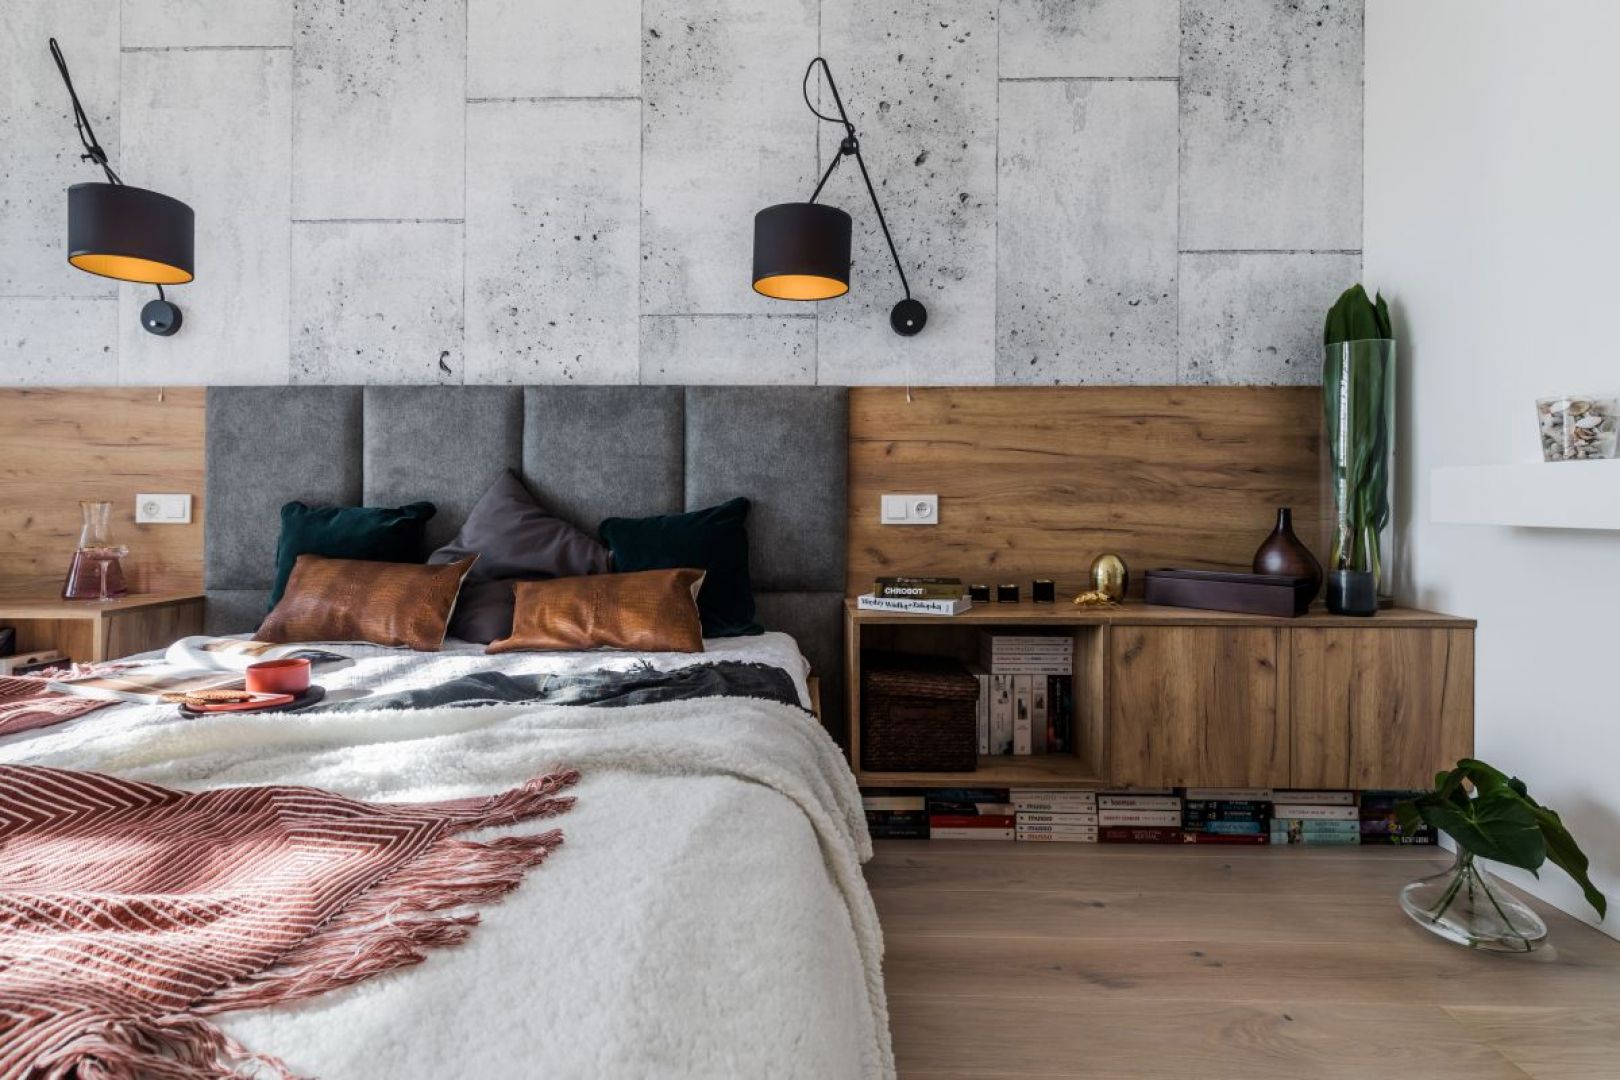 Sypialnia nawiązująca do stylu industrialnego to propozycja dla osób ceniących nowoczesny minimalizm i subtelne kontrasty. Fot. Kodo